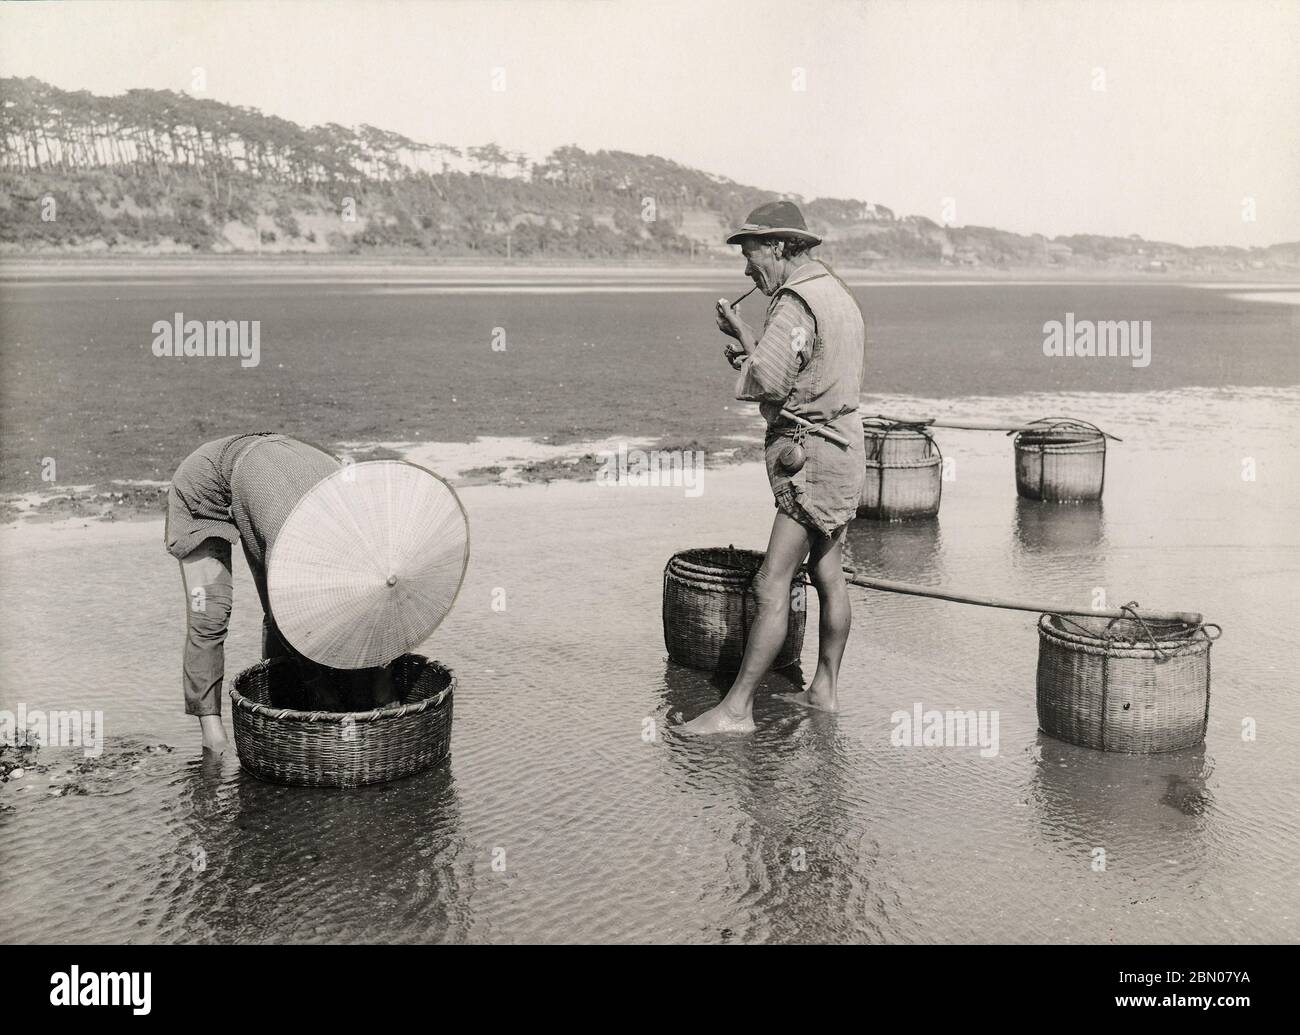 [ Japon des années 1920 - chasseurs de crevettes japonais ] — deux hommes pêchant des crevettes sur la plage de la baie de Tokyo. On fume un tuyau. imprimé gélatine argent du xxe siècle. Banque D'Images